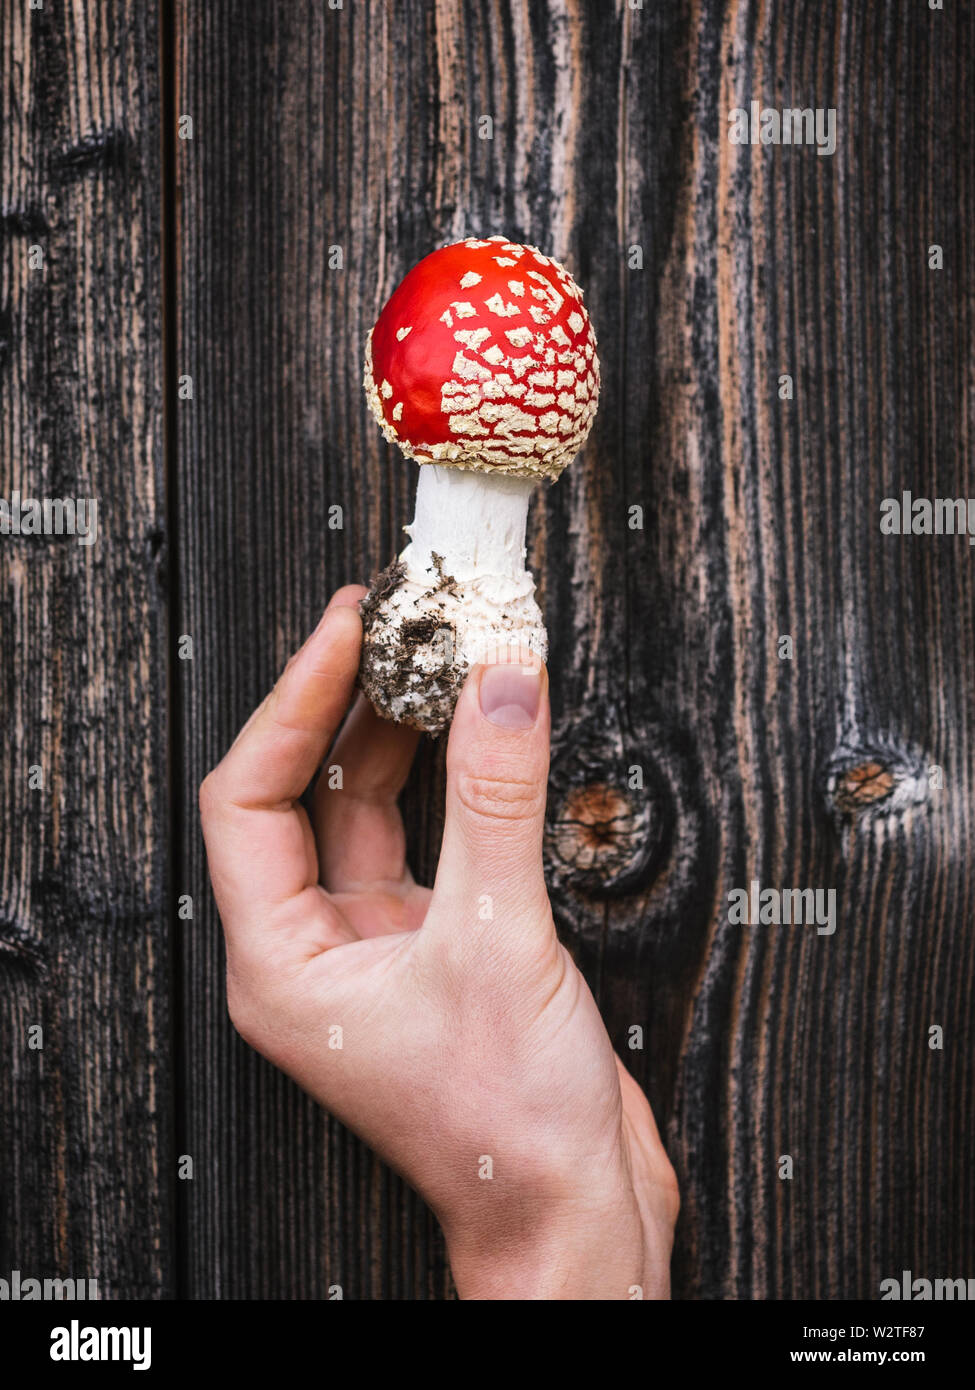 Rosso di funghi velenosi amanita muscaria () sullo sfondo di età di tavole di legno. Originale e sorprendente nella natura Foto Stock